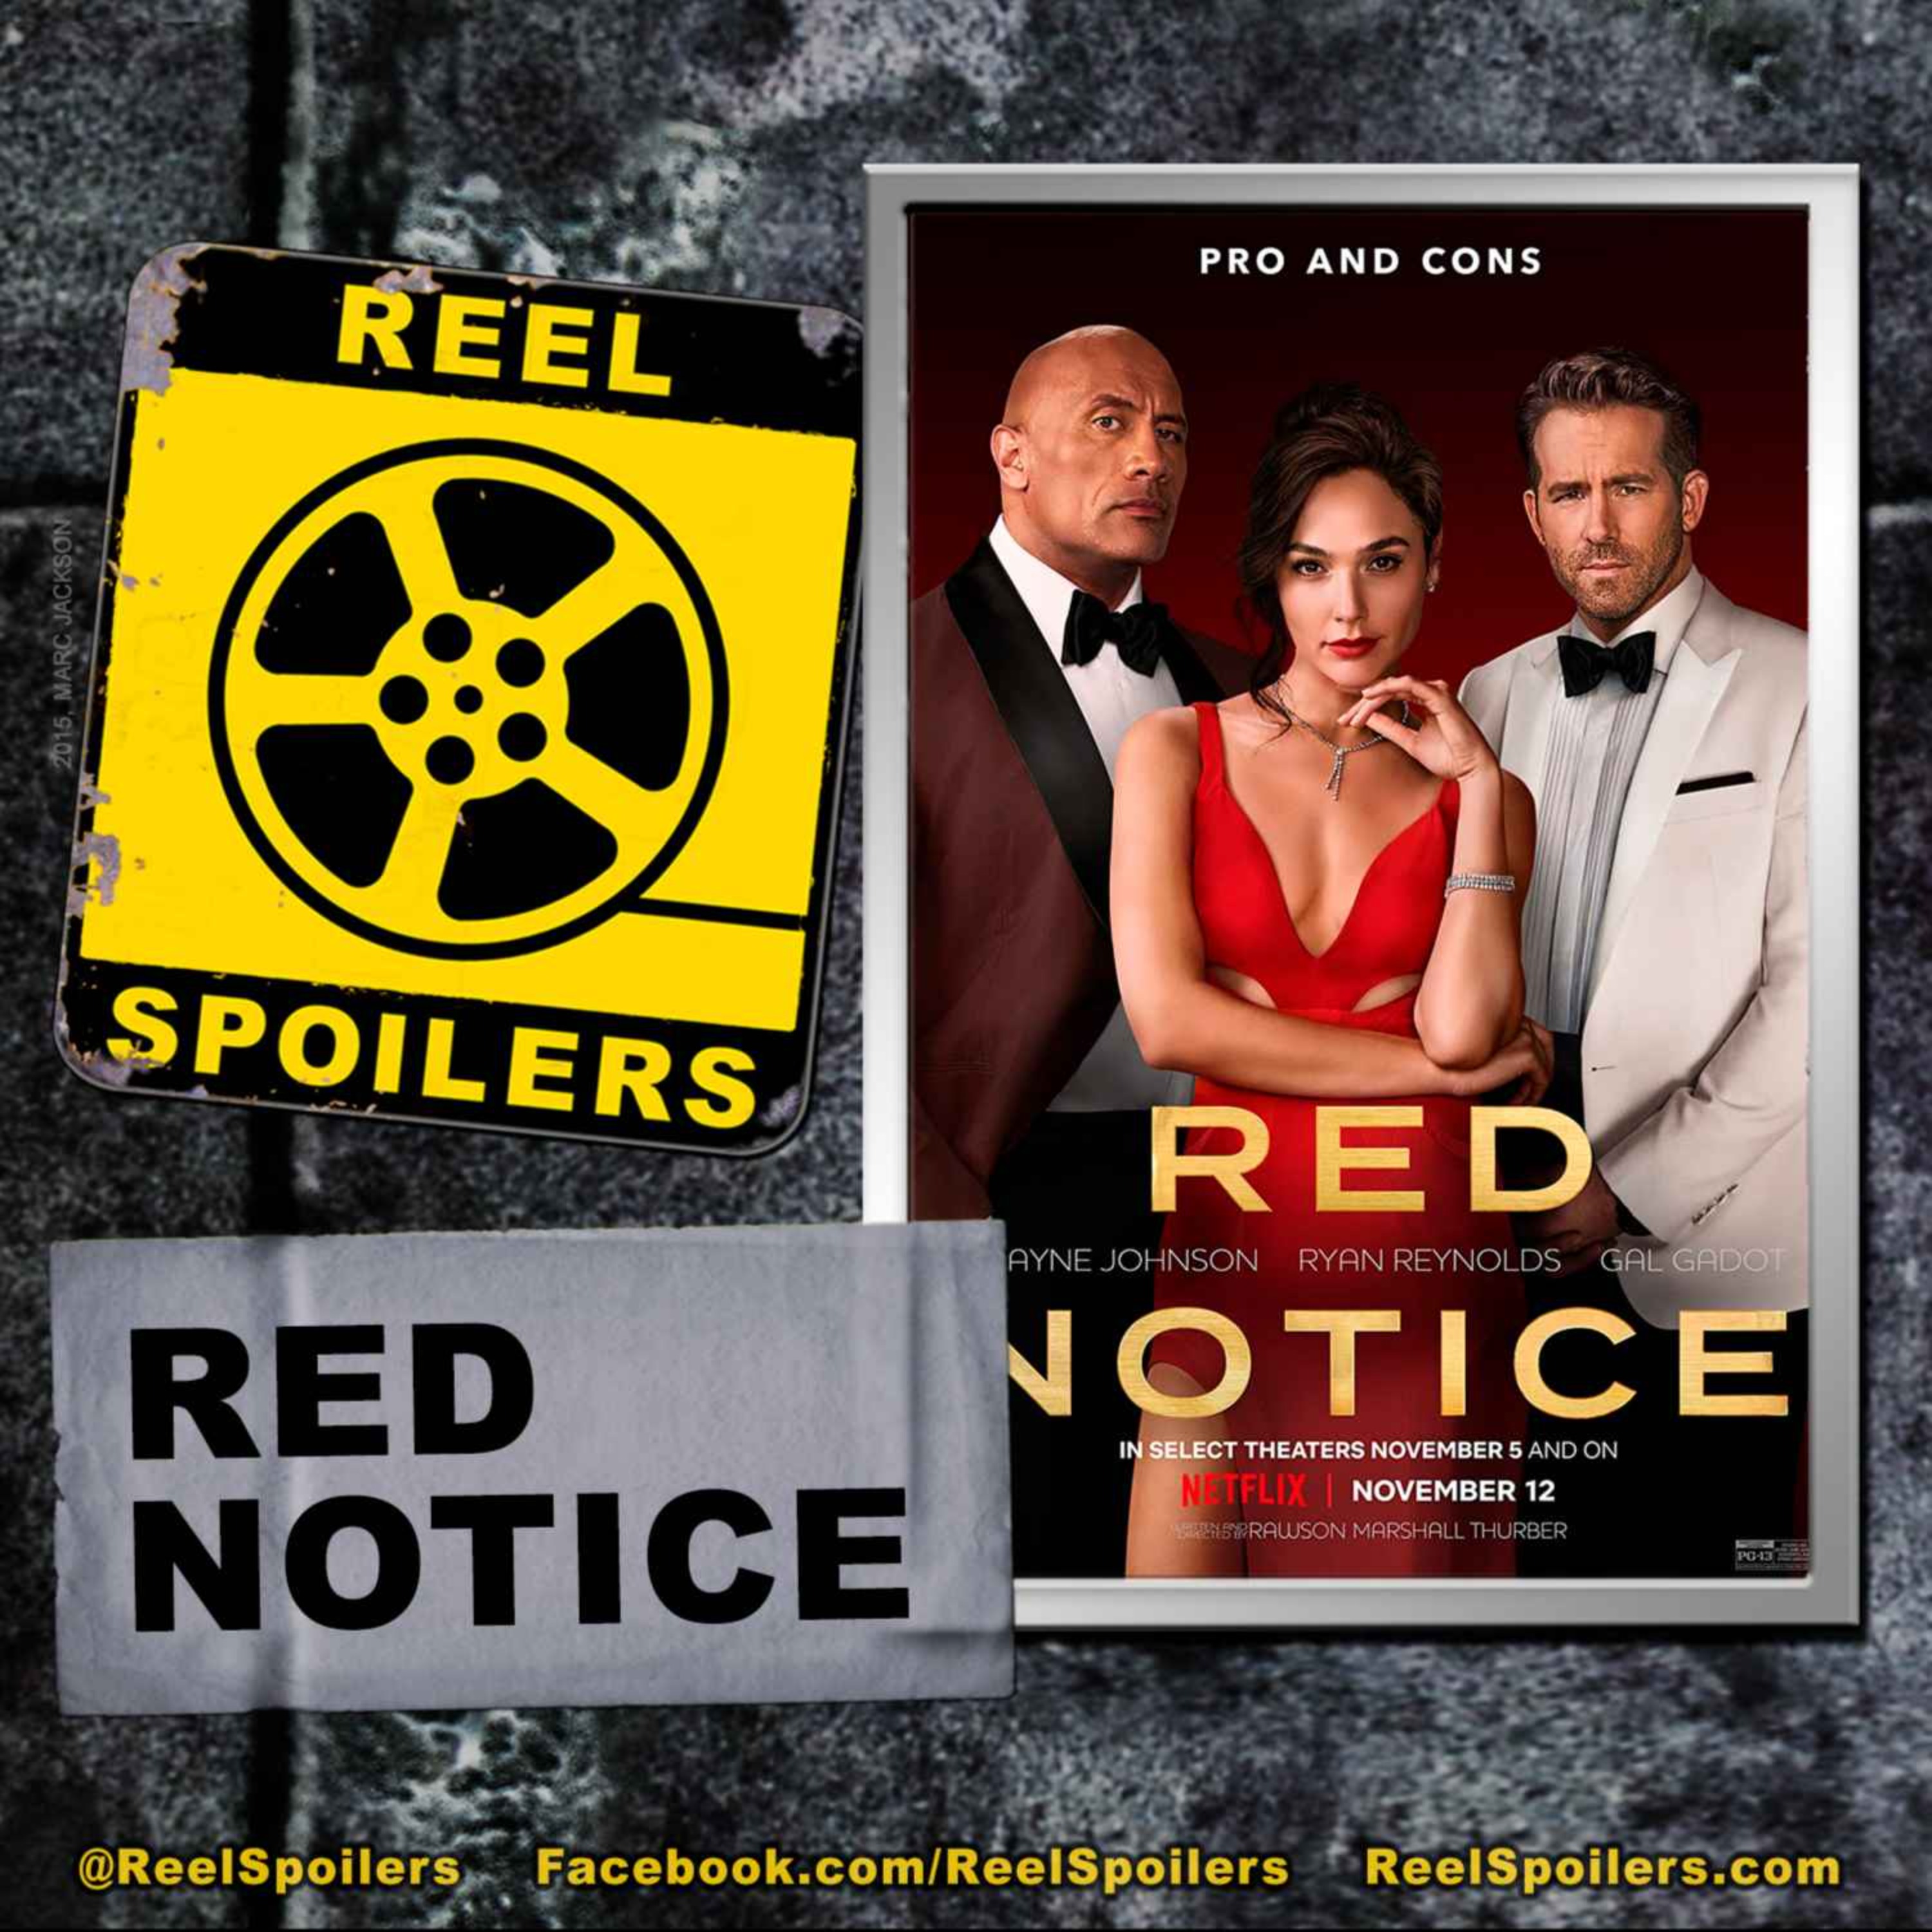 RED NOTICE Starring Ryan Reynolds, Dwayne Johnson, Gal Gadot Image